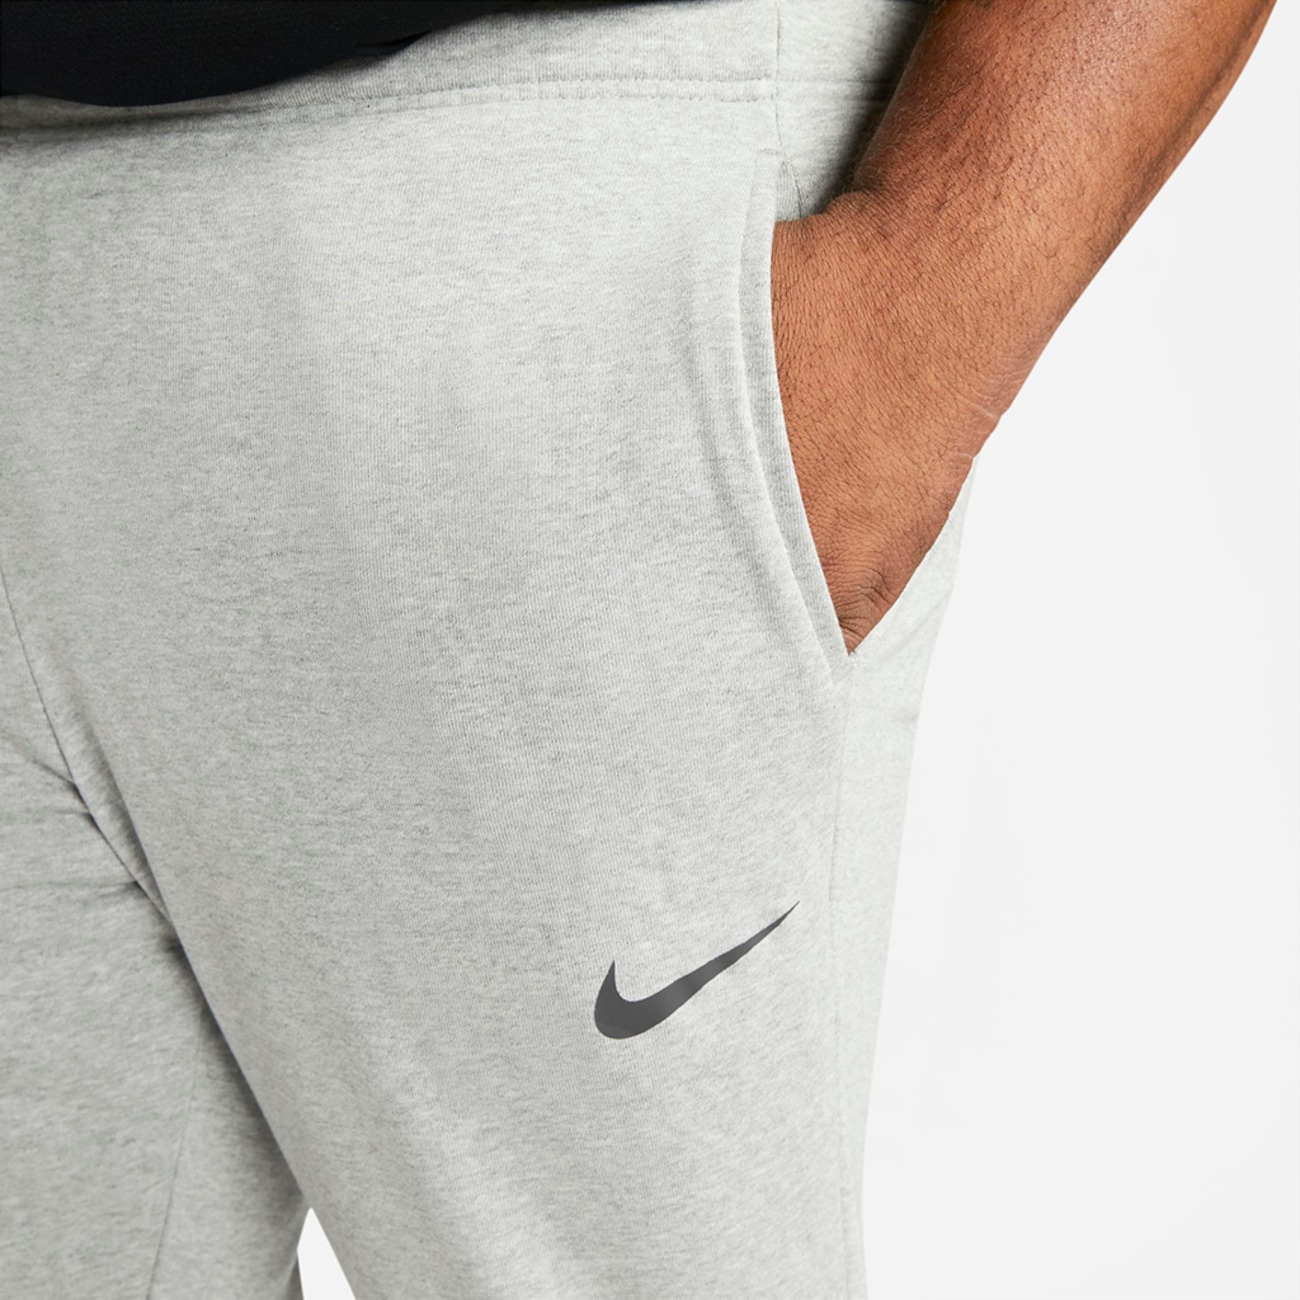 Calça Nike Dri-FIT Masculina - Foto 11